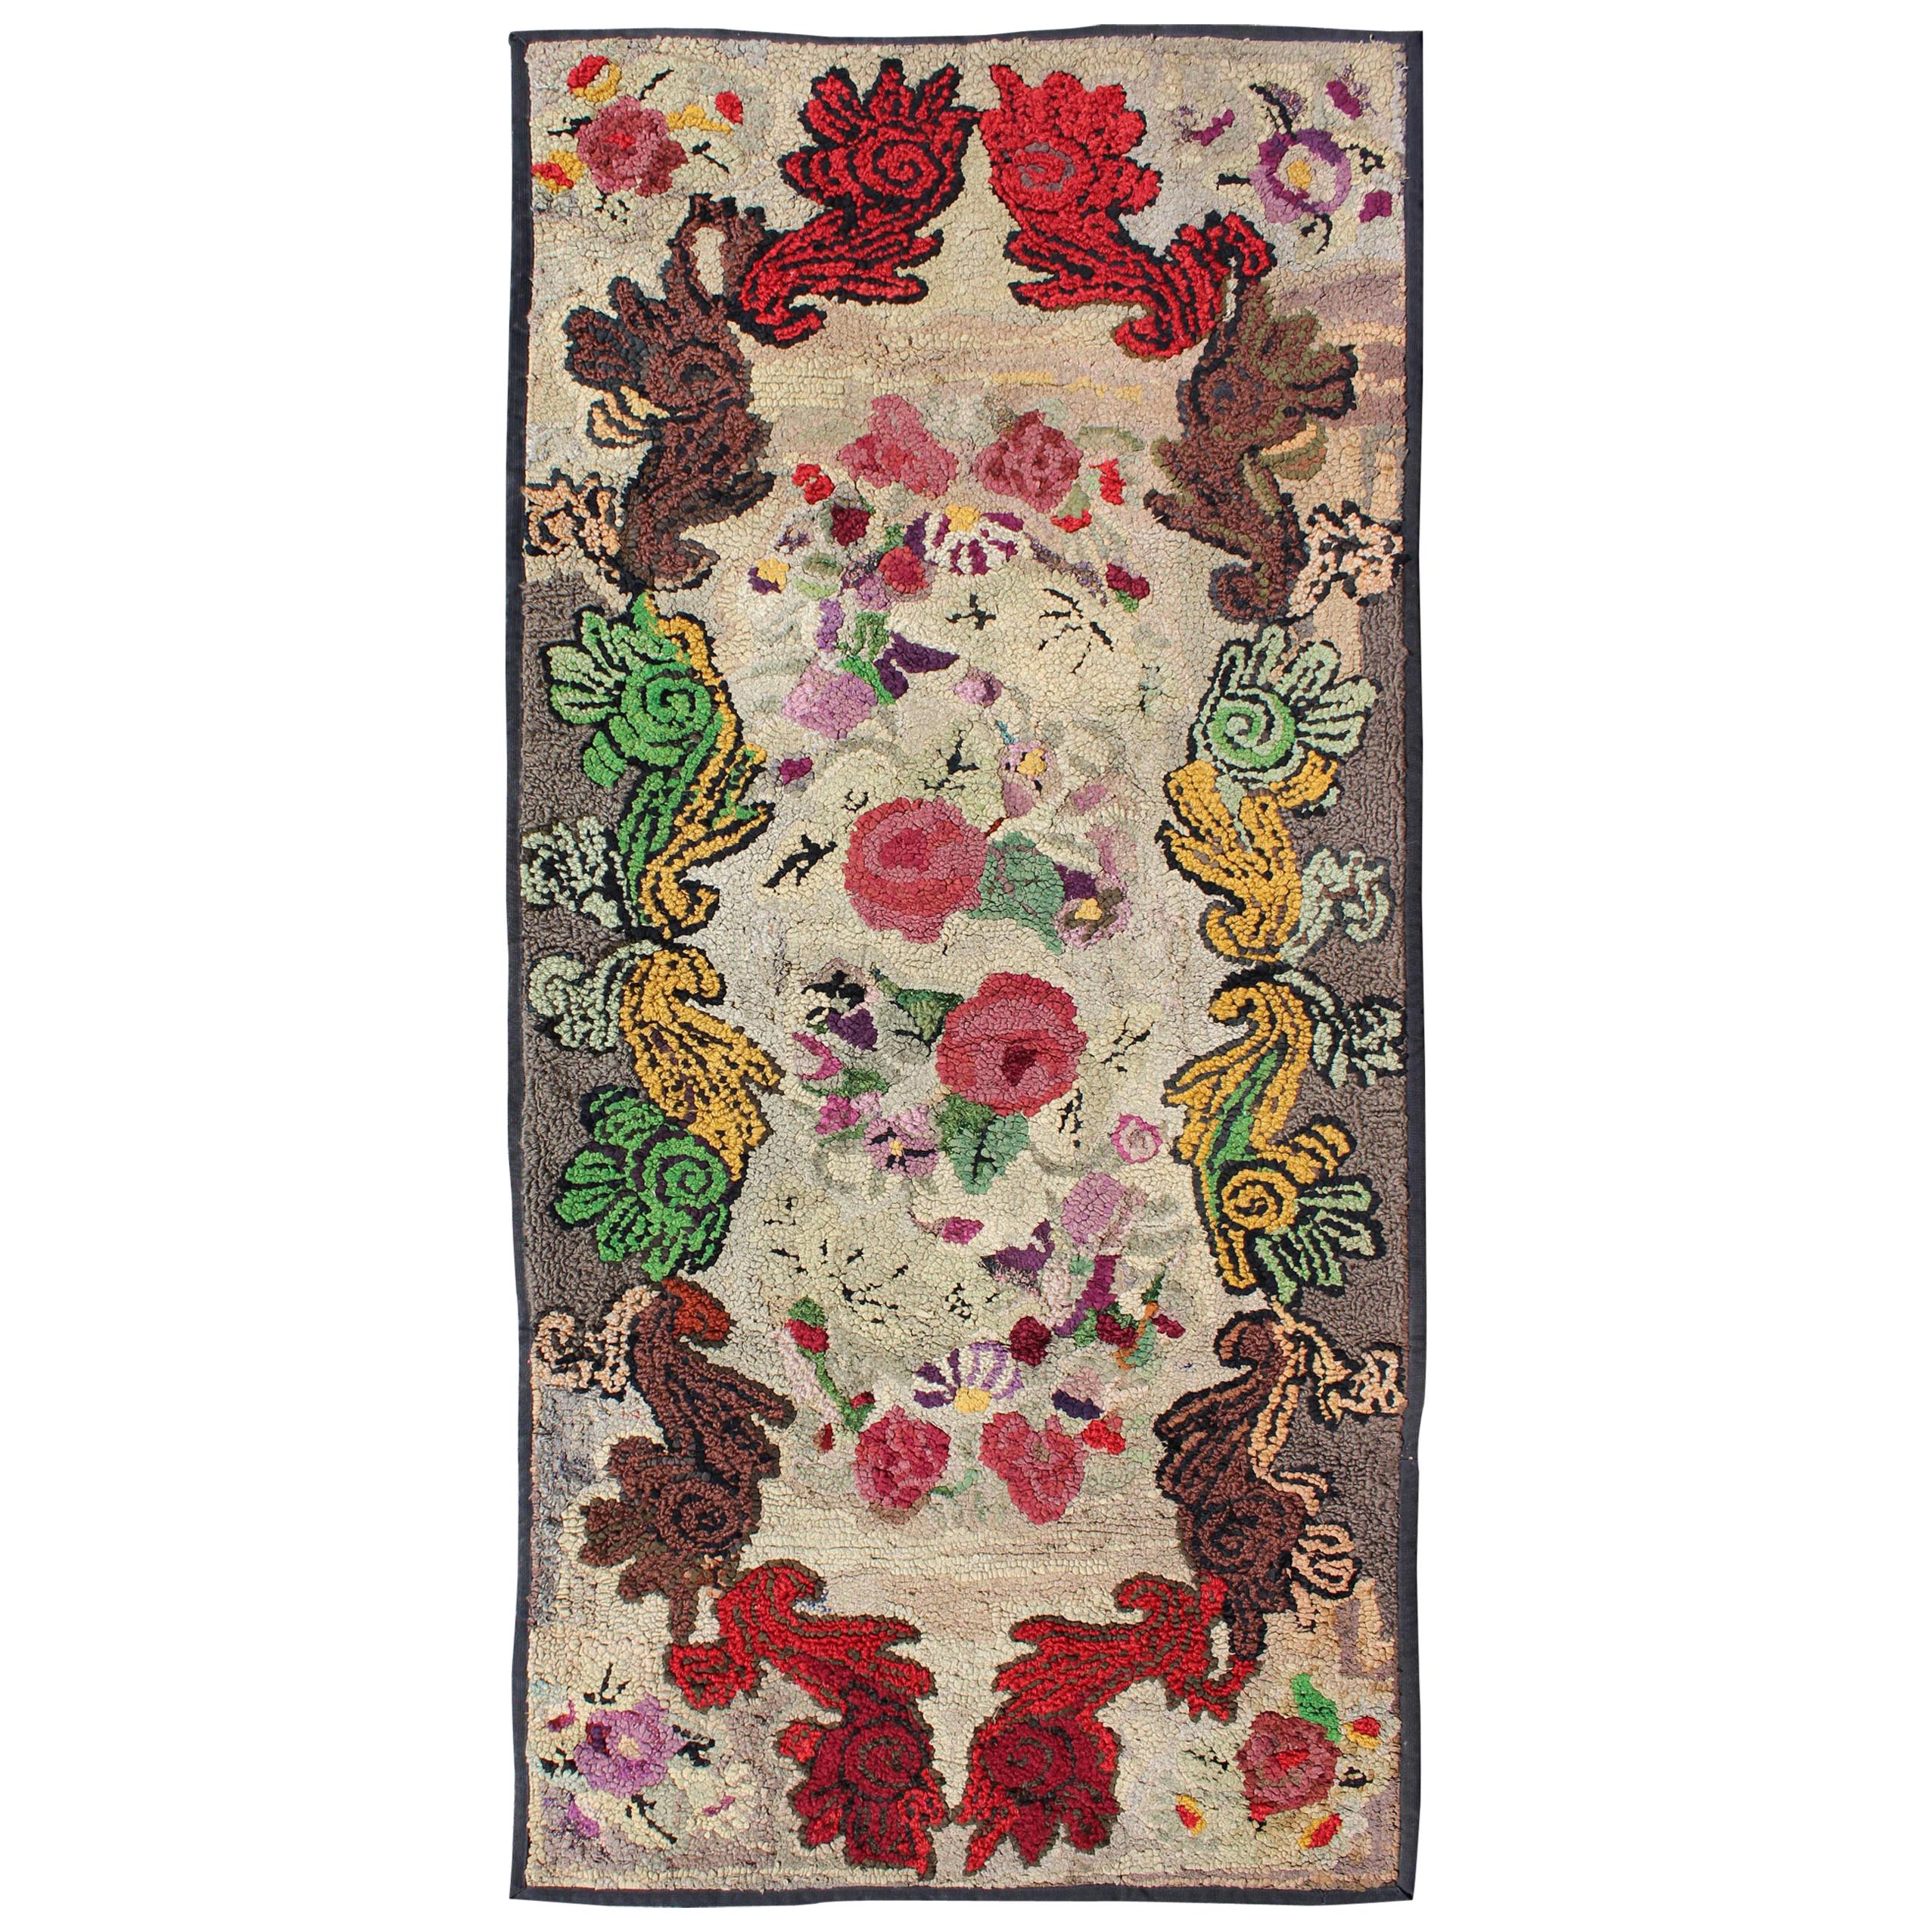 Antiker amerikanischer geblümter antiker Teppich mit Kapuze in schönen Farben Rot, Grün, Gelb